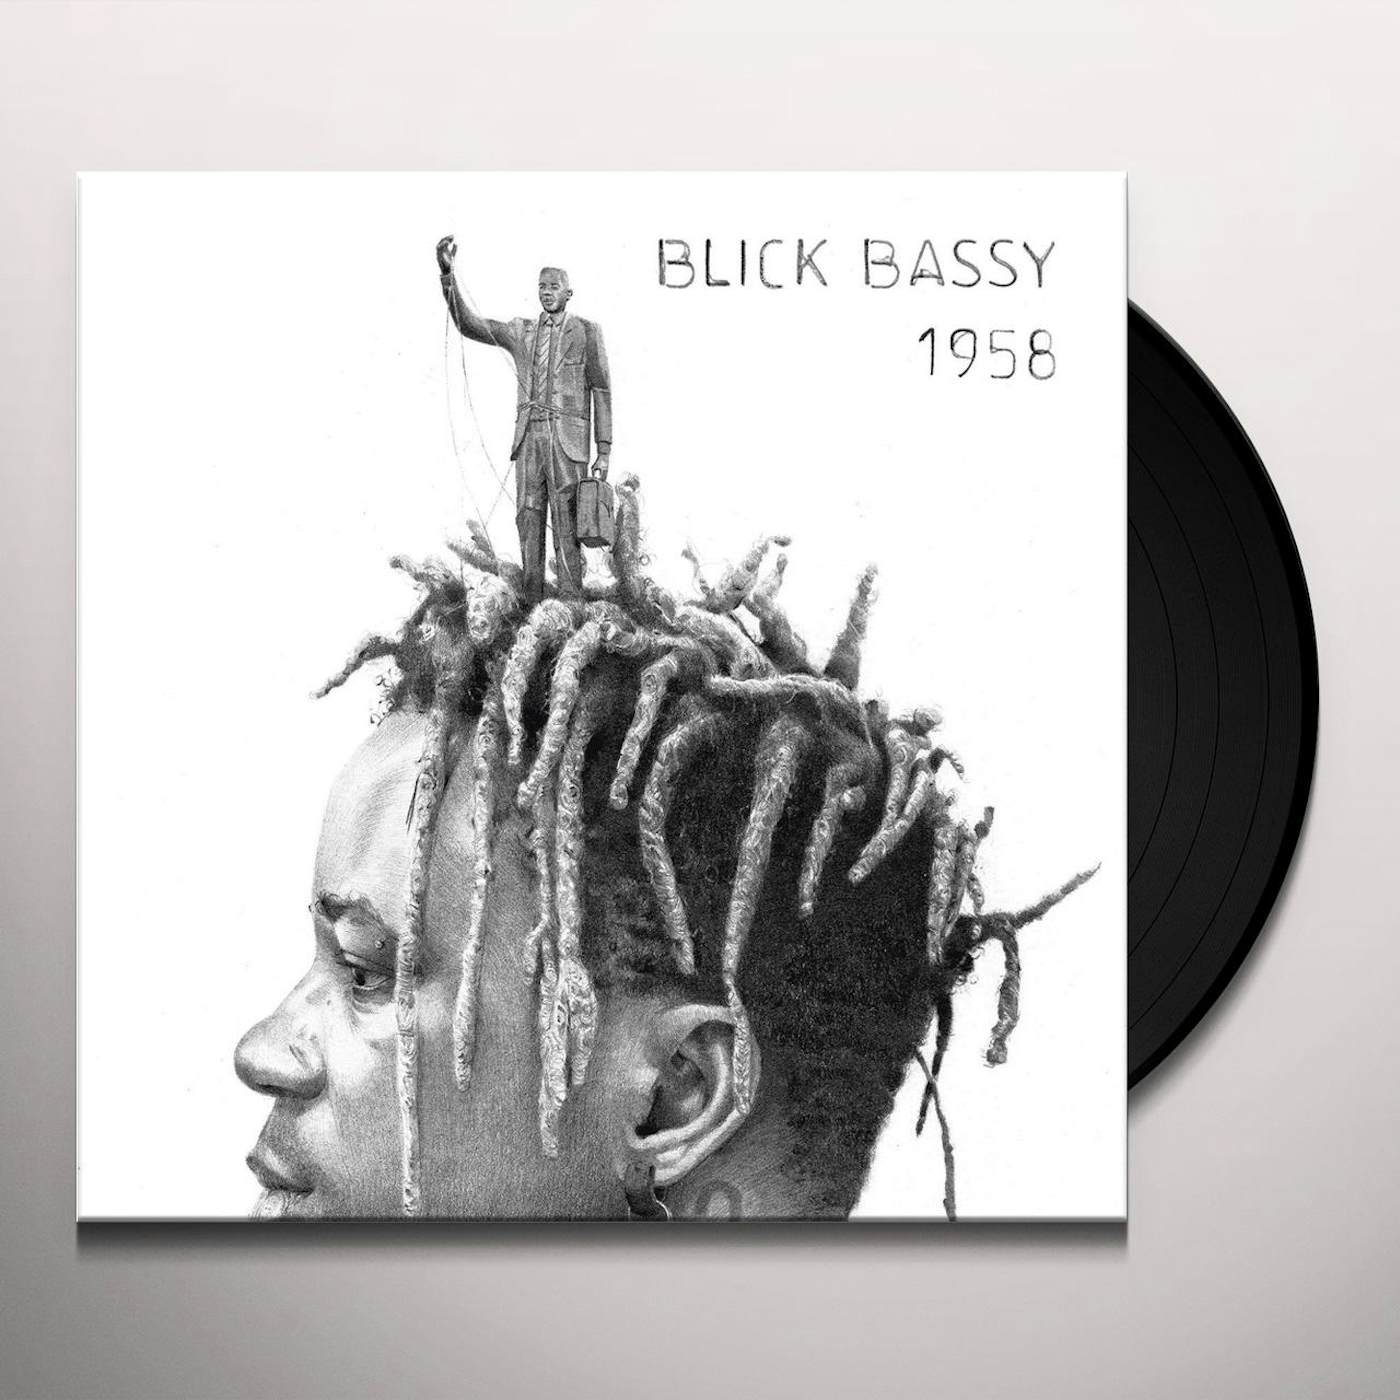 Blick Bassy 1958 Vinyl Record